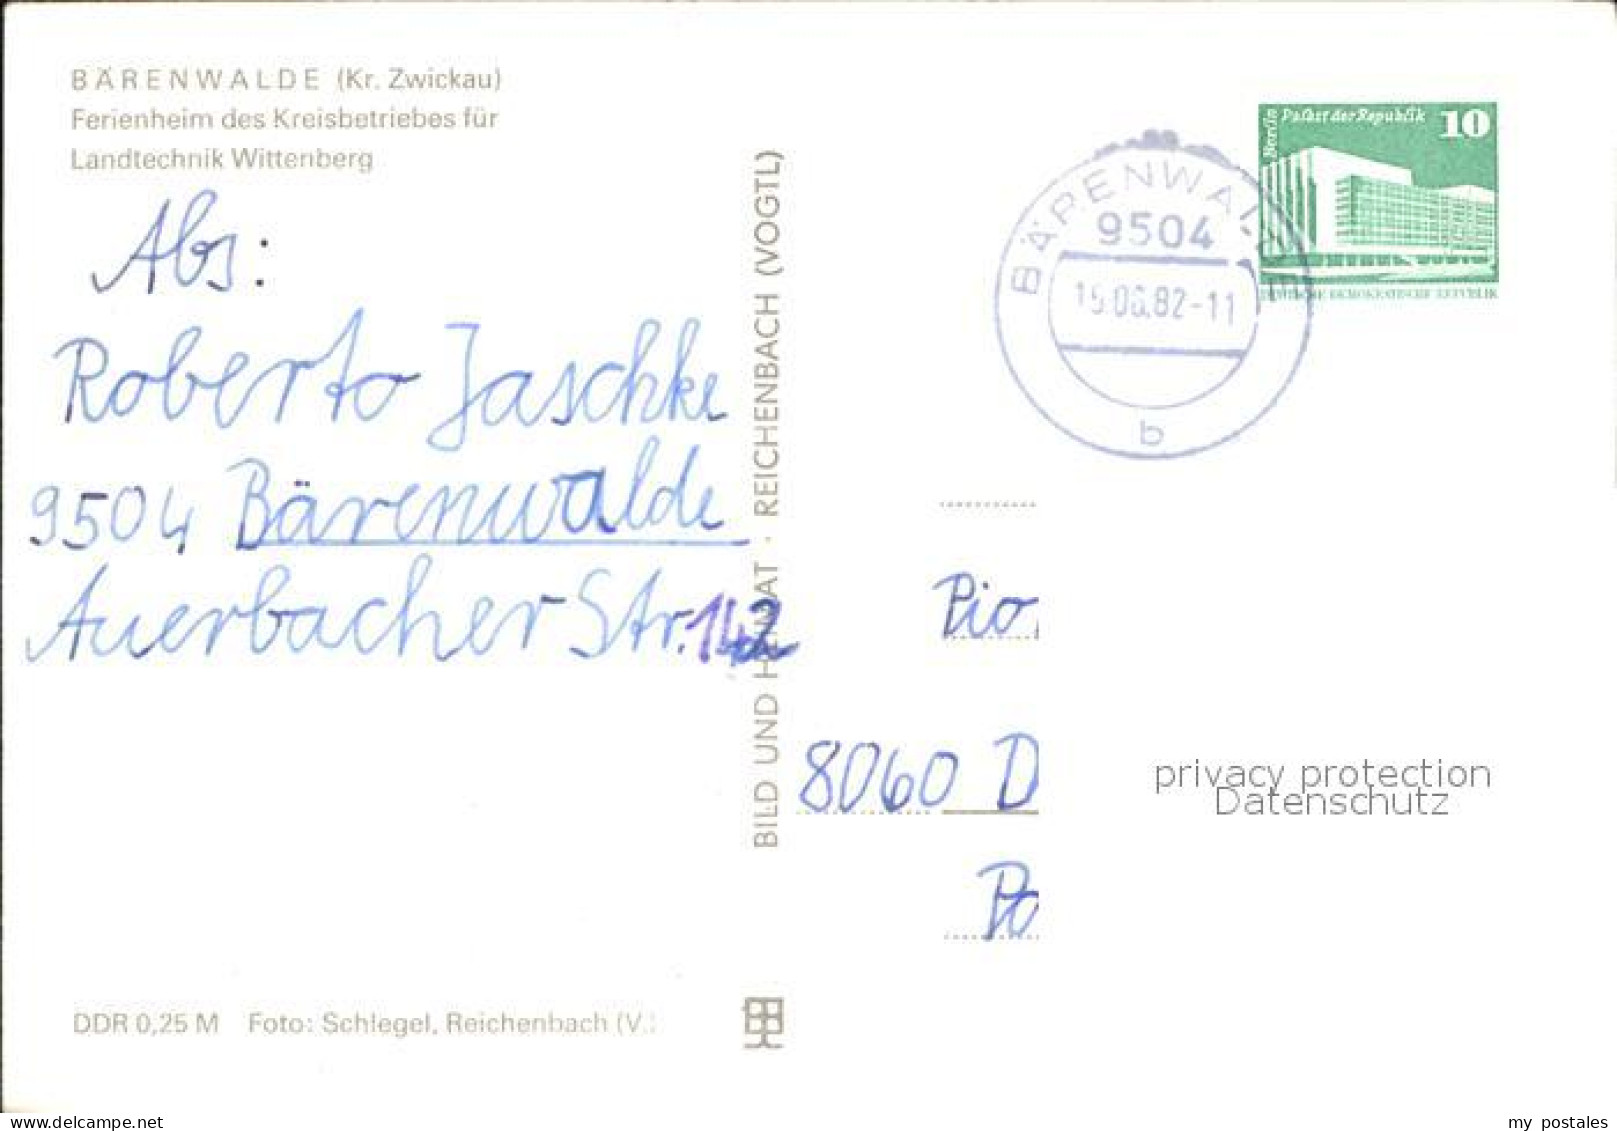 41610280 Baerenwalde Ferienheim Landtechnik Wittenberg  Baerenwalde - Crinitzberg